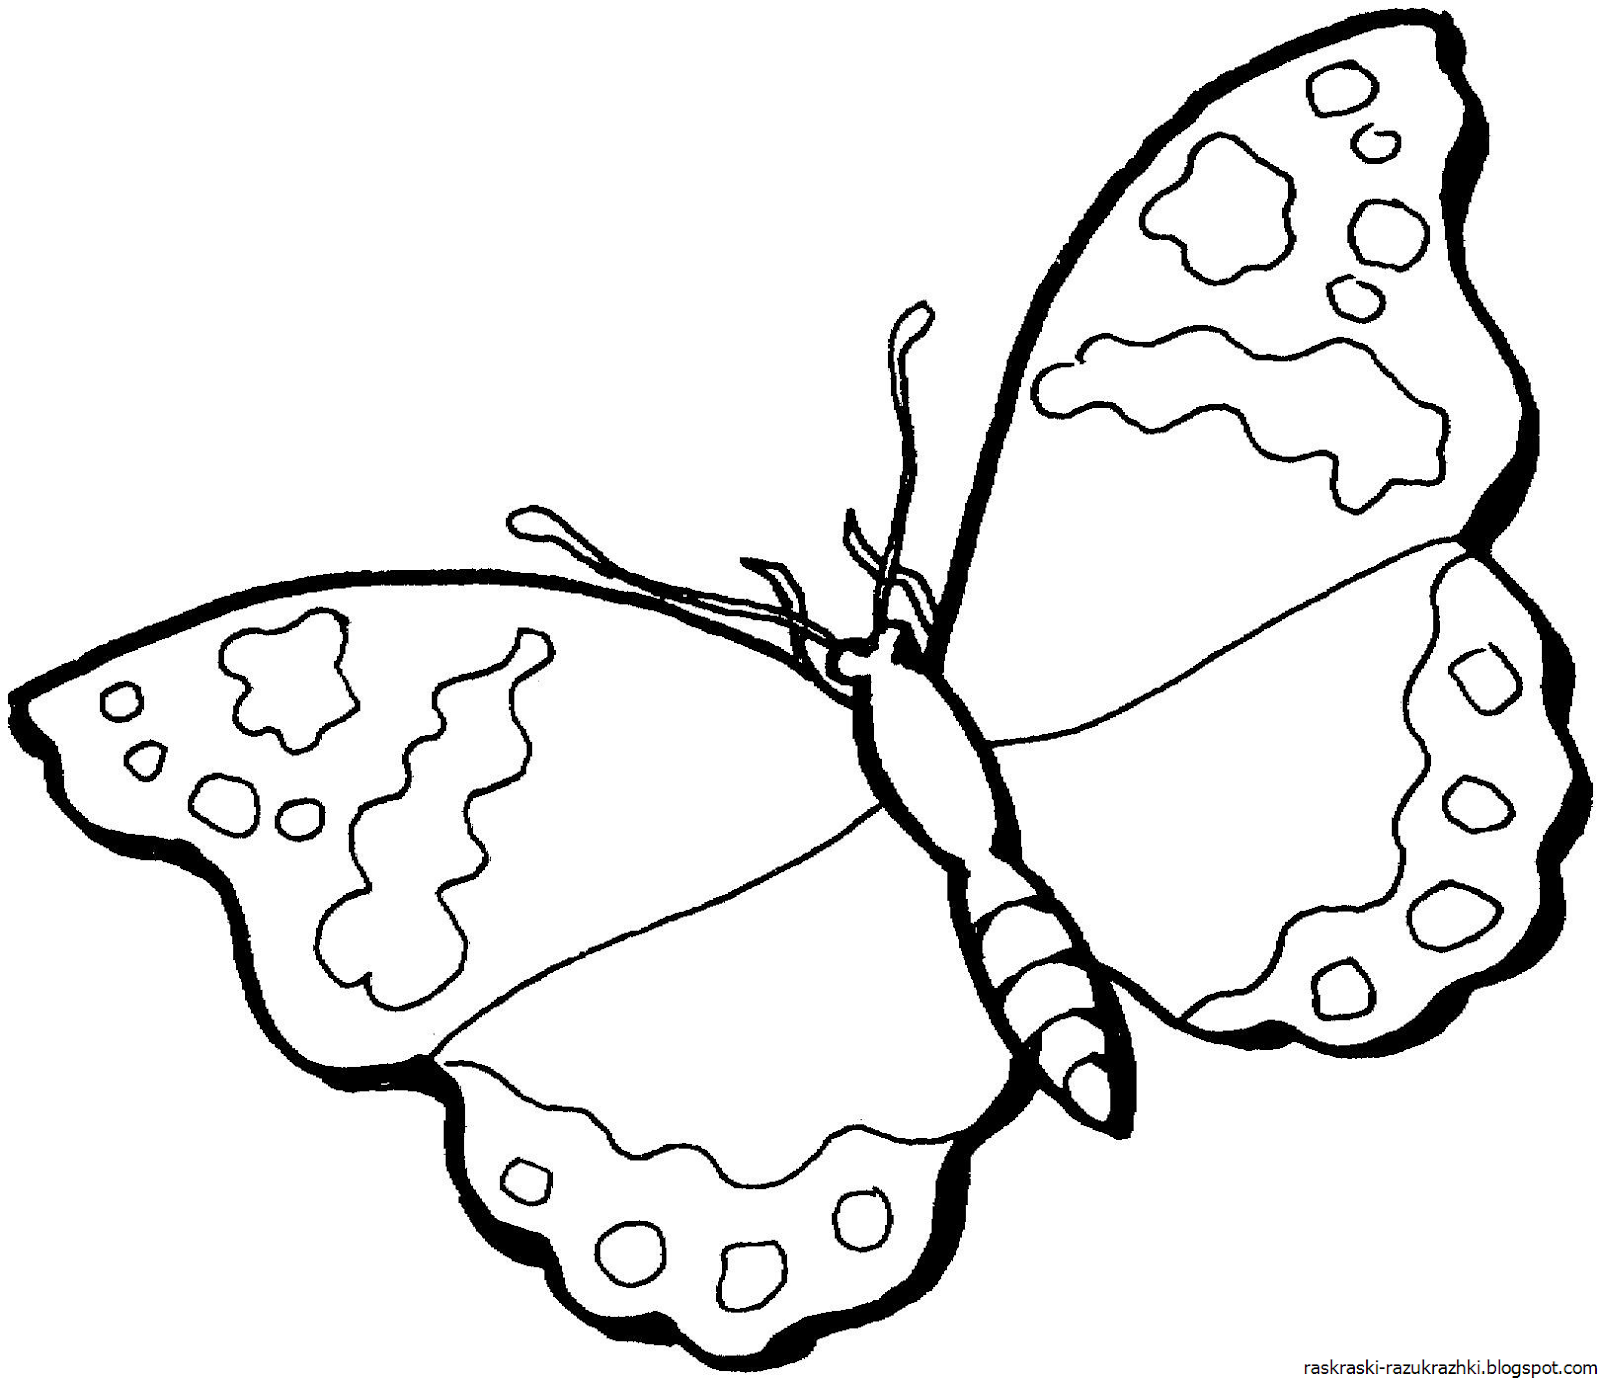 Раскраска насекомые для детей 3 4 лет. Раскраска "бабочки". Бабочка раскраска для детей. Рисунки дляраскршивания. Детские раскраски бабочки.